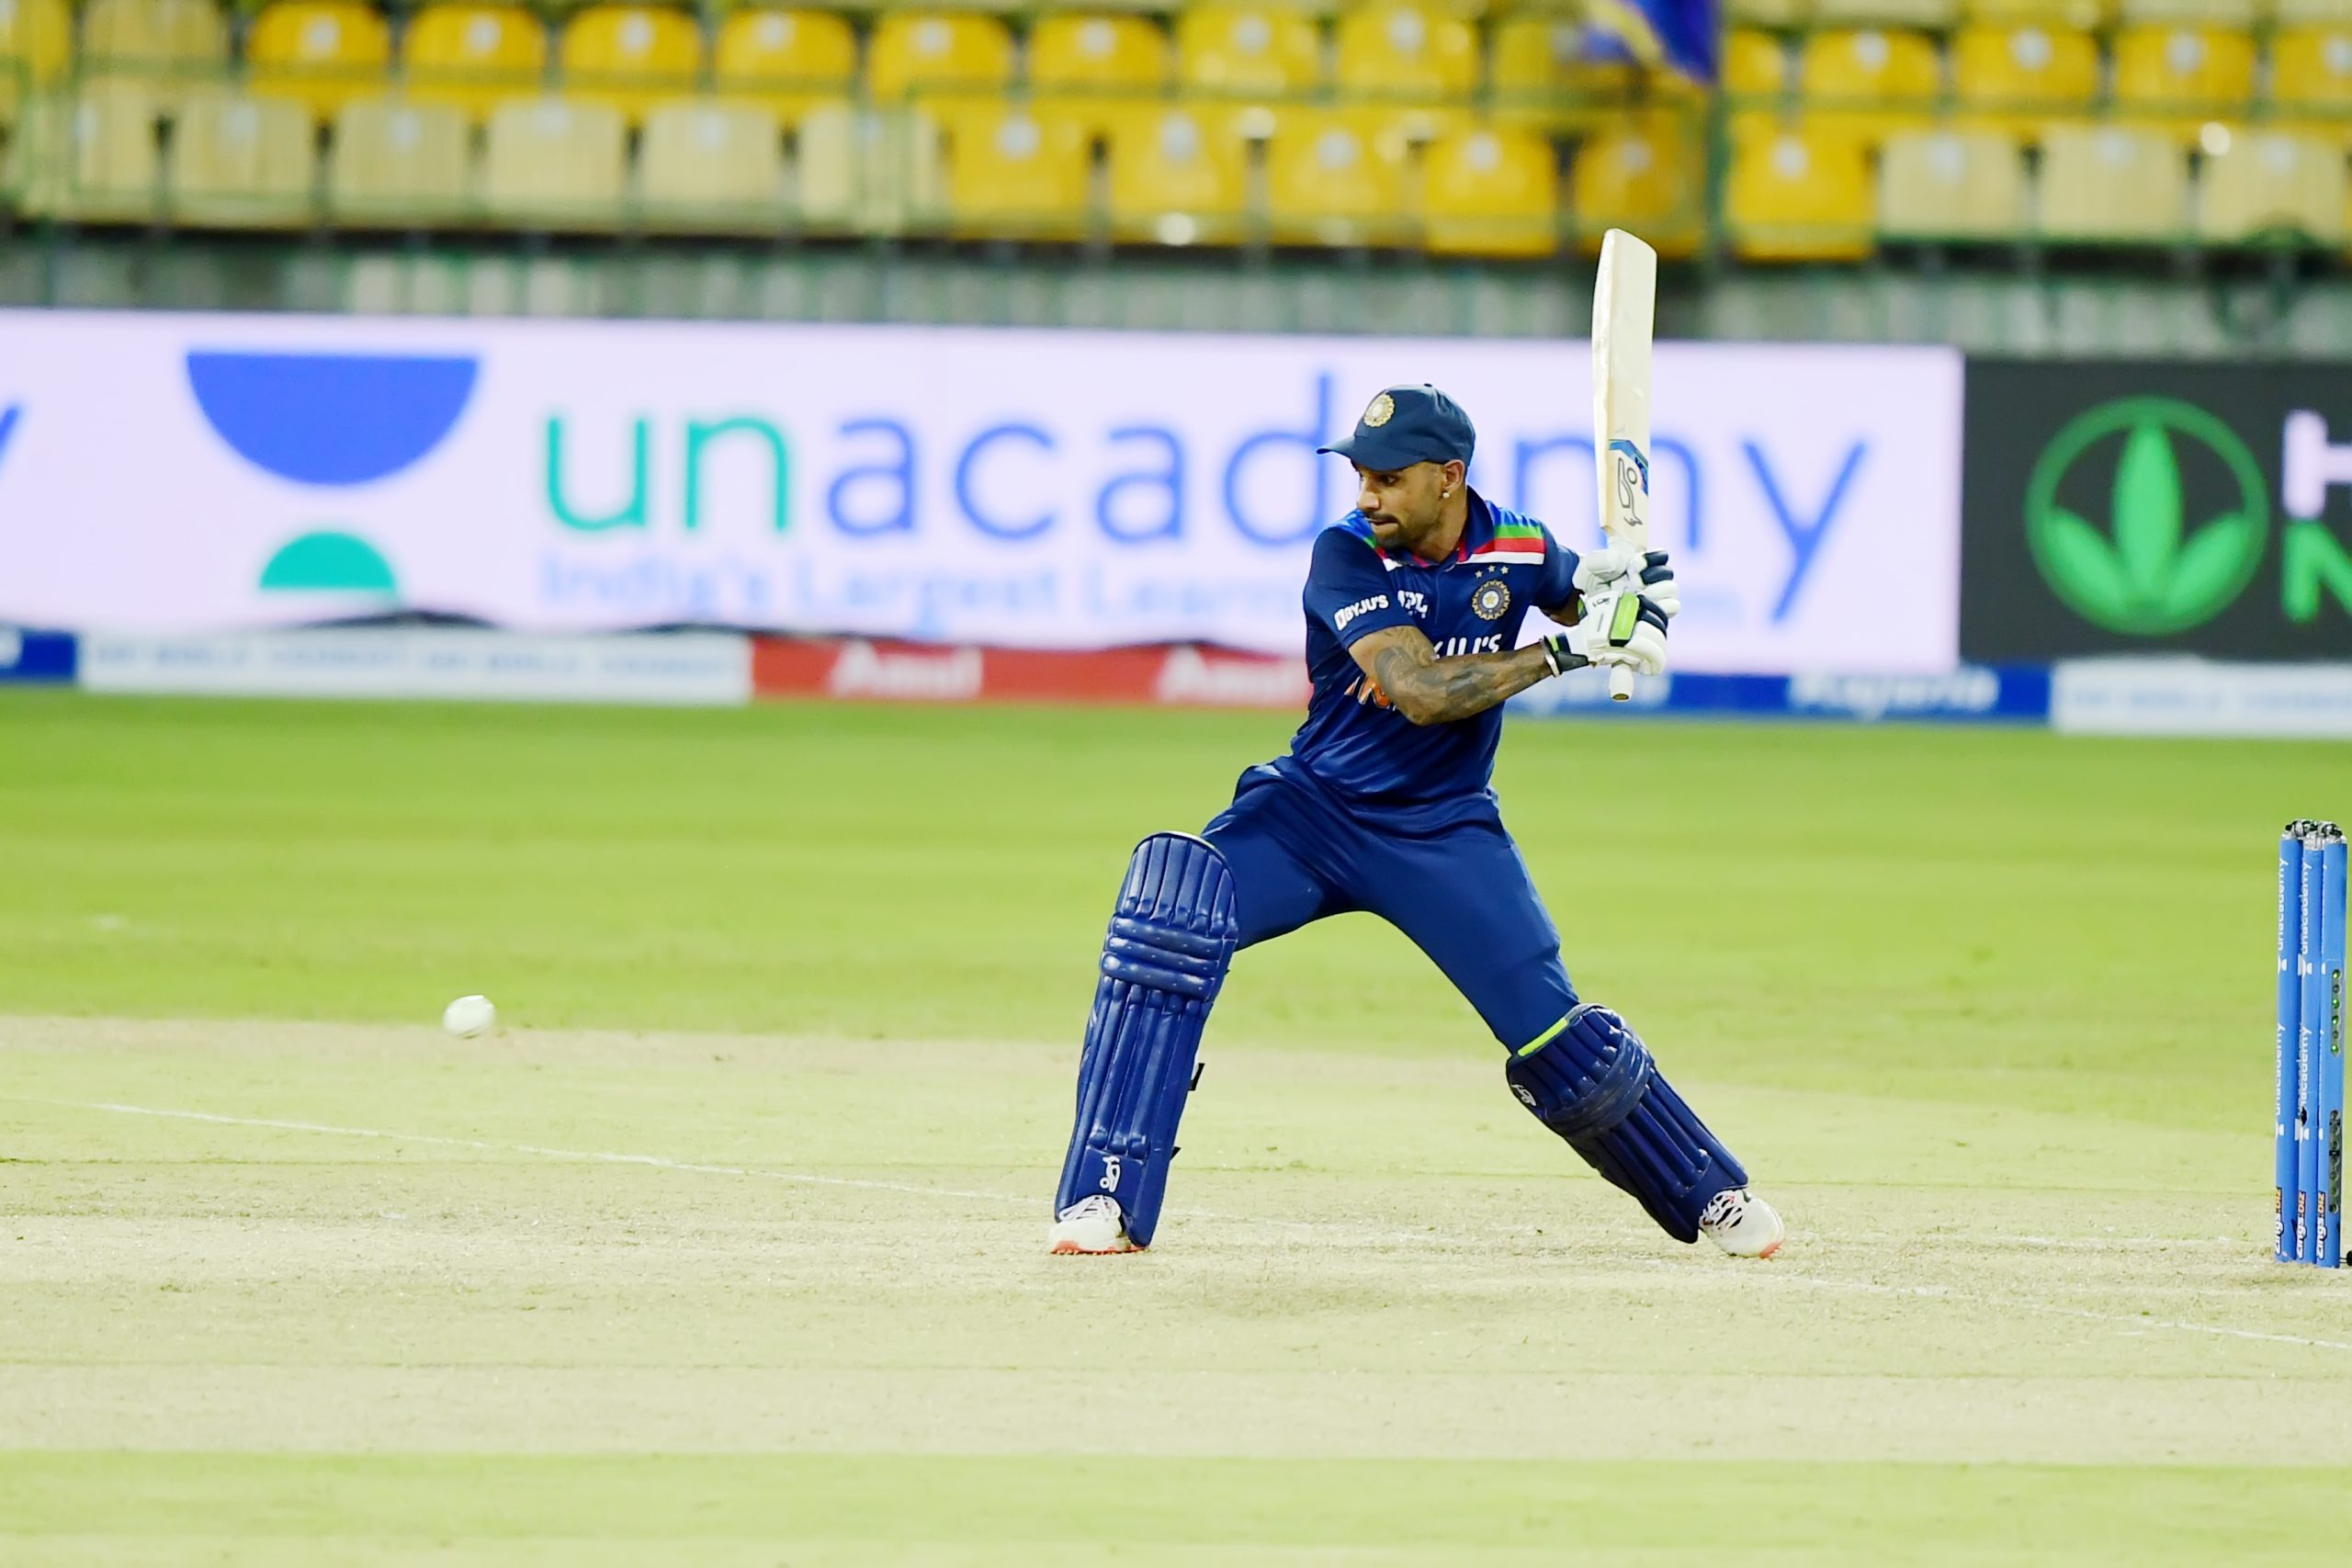 Dhawan captain’s knock of 86 in India’s 263/3 in reply to Sri Lanka’s 262/9